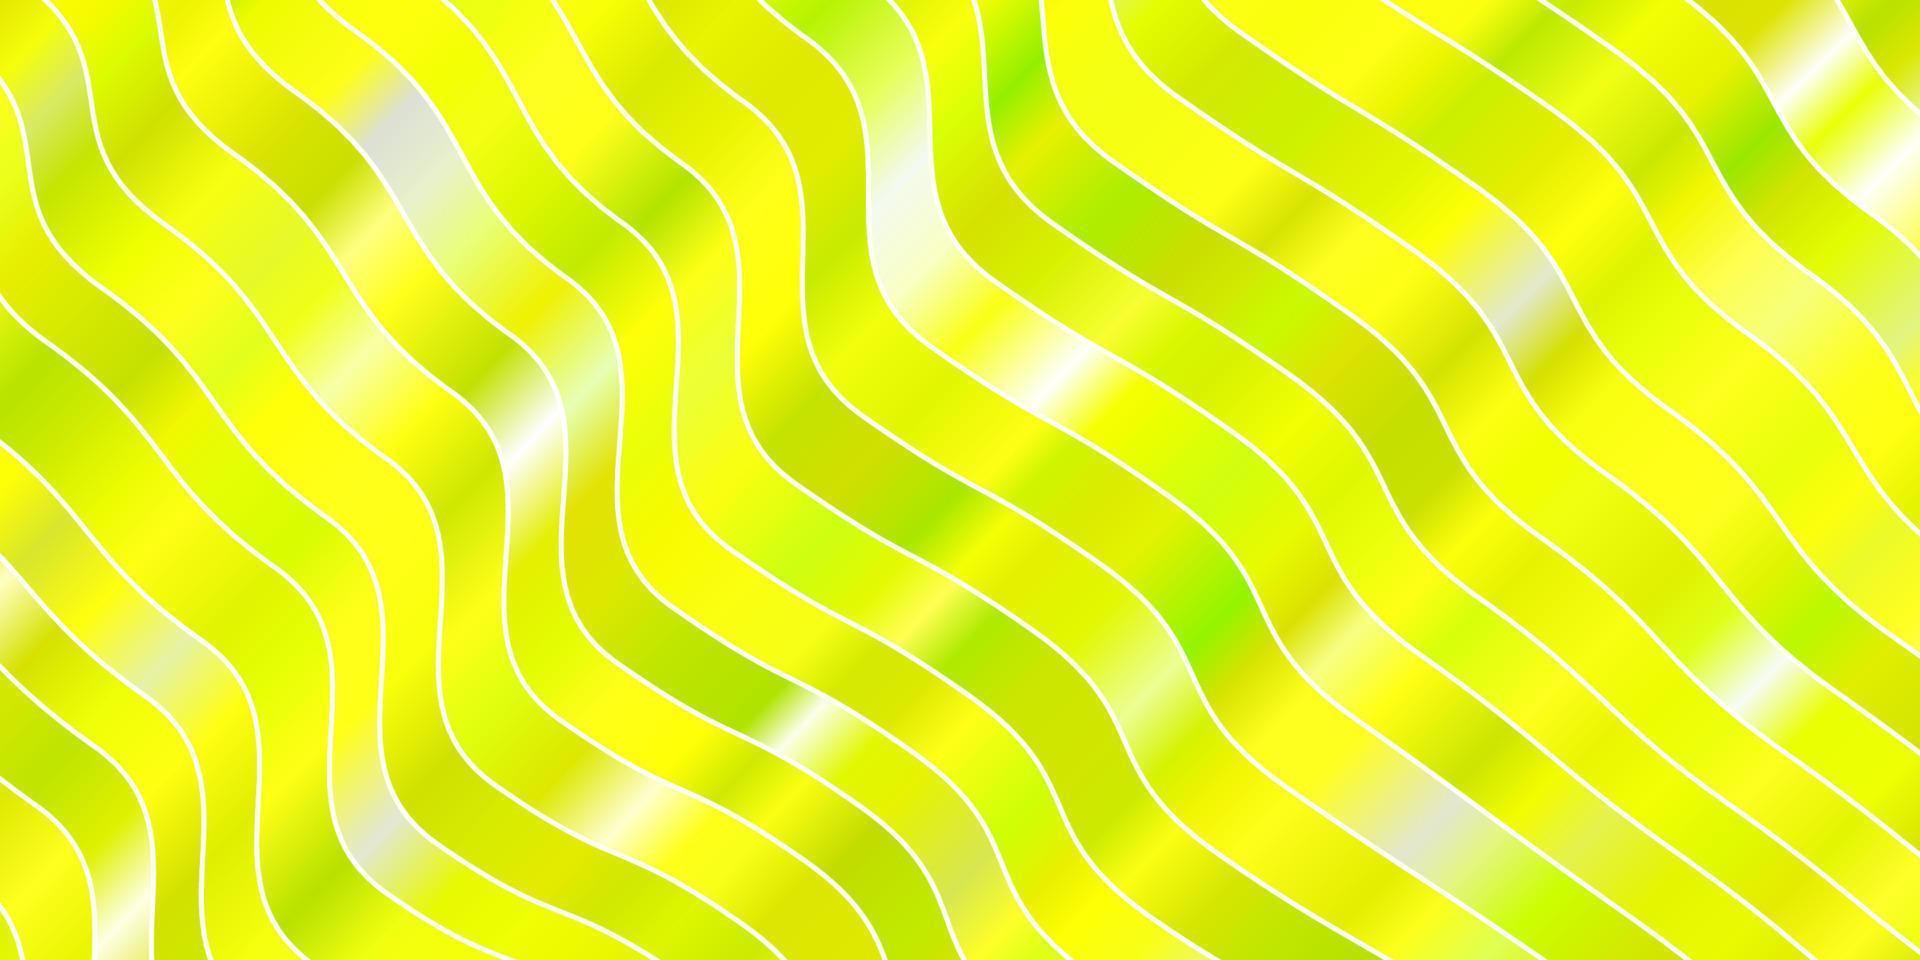 modello vettoriale verde chiaro, giallo con curve.